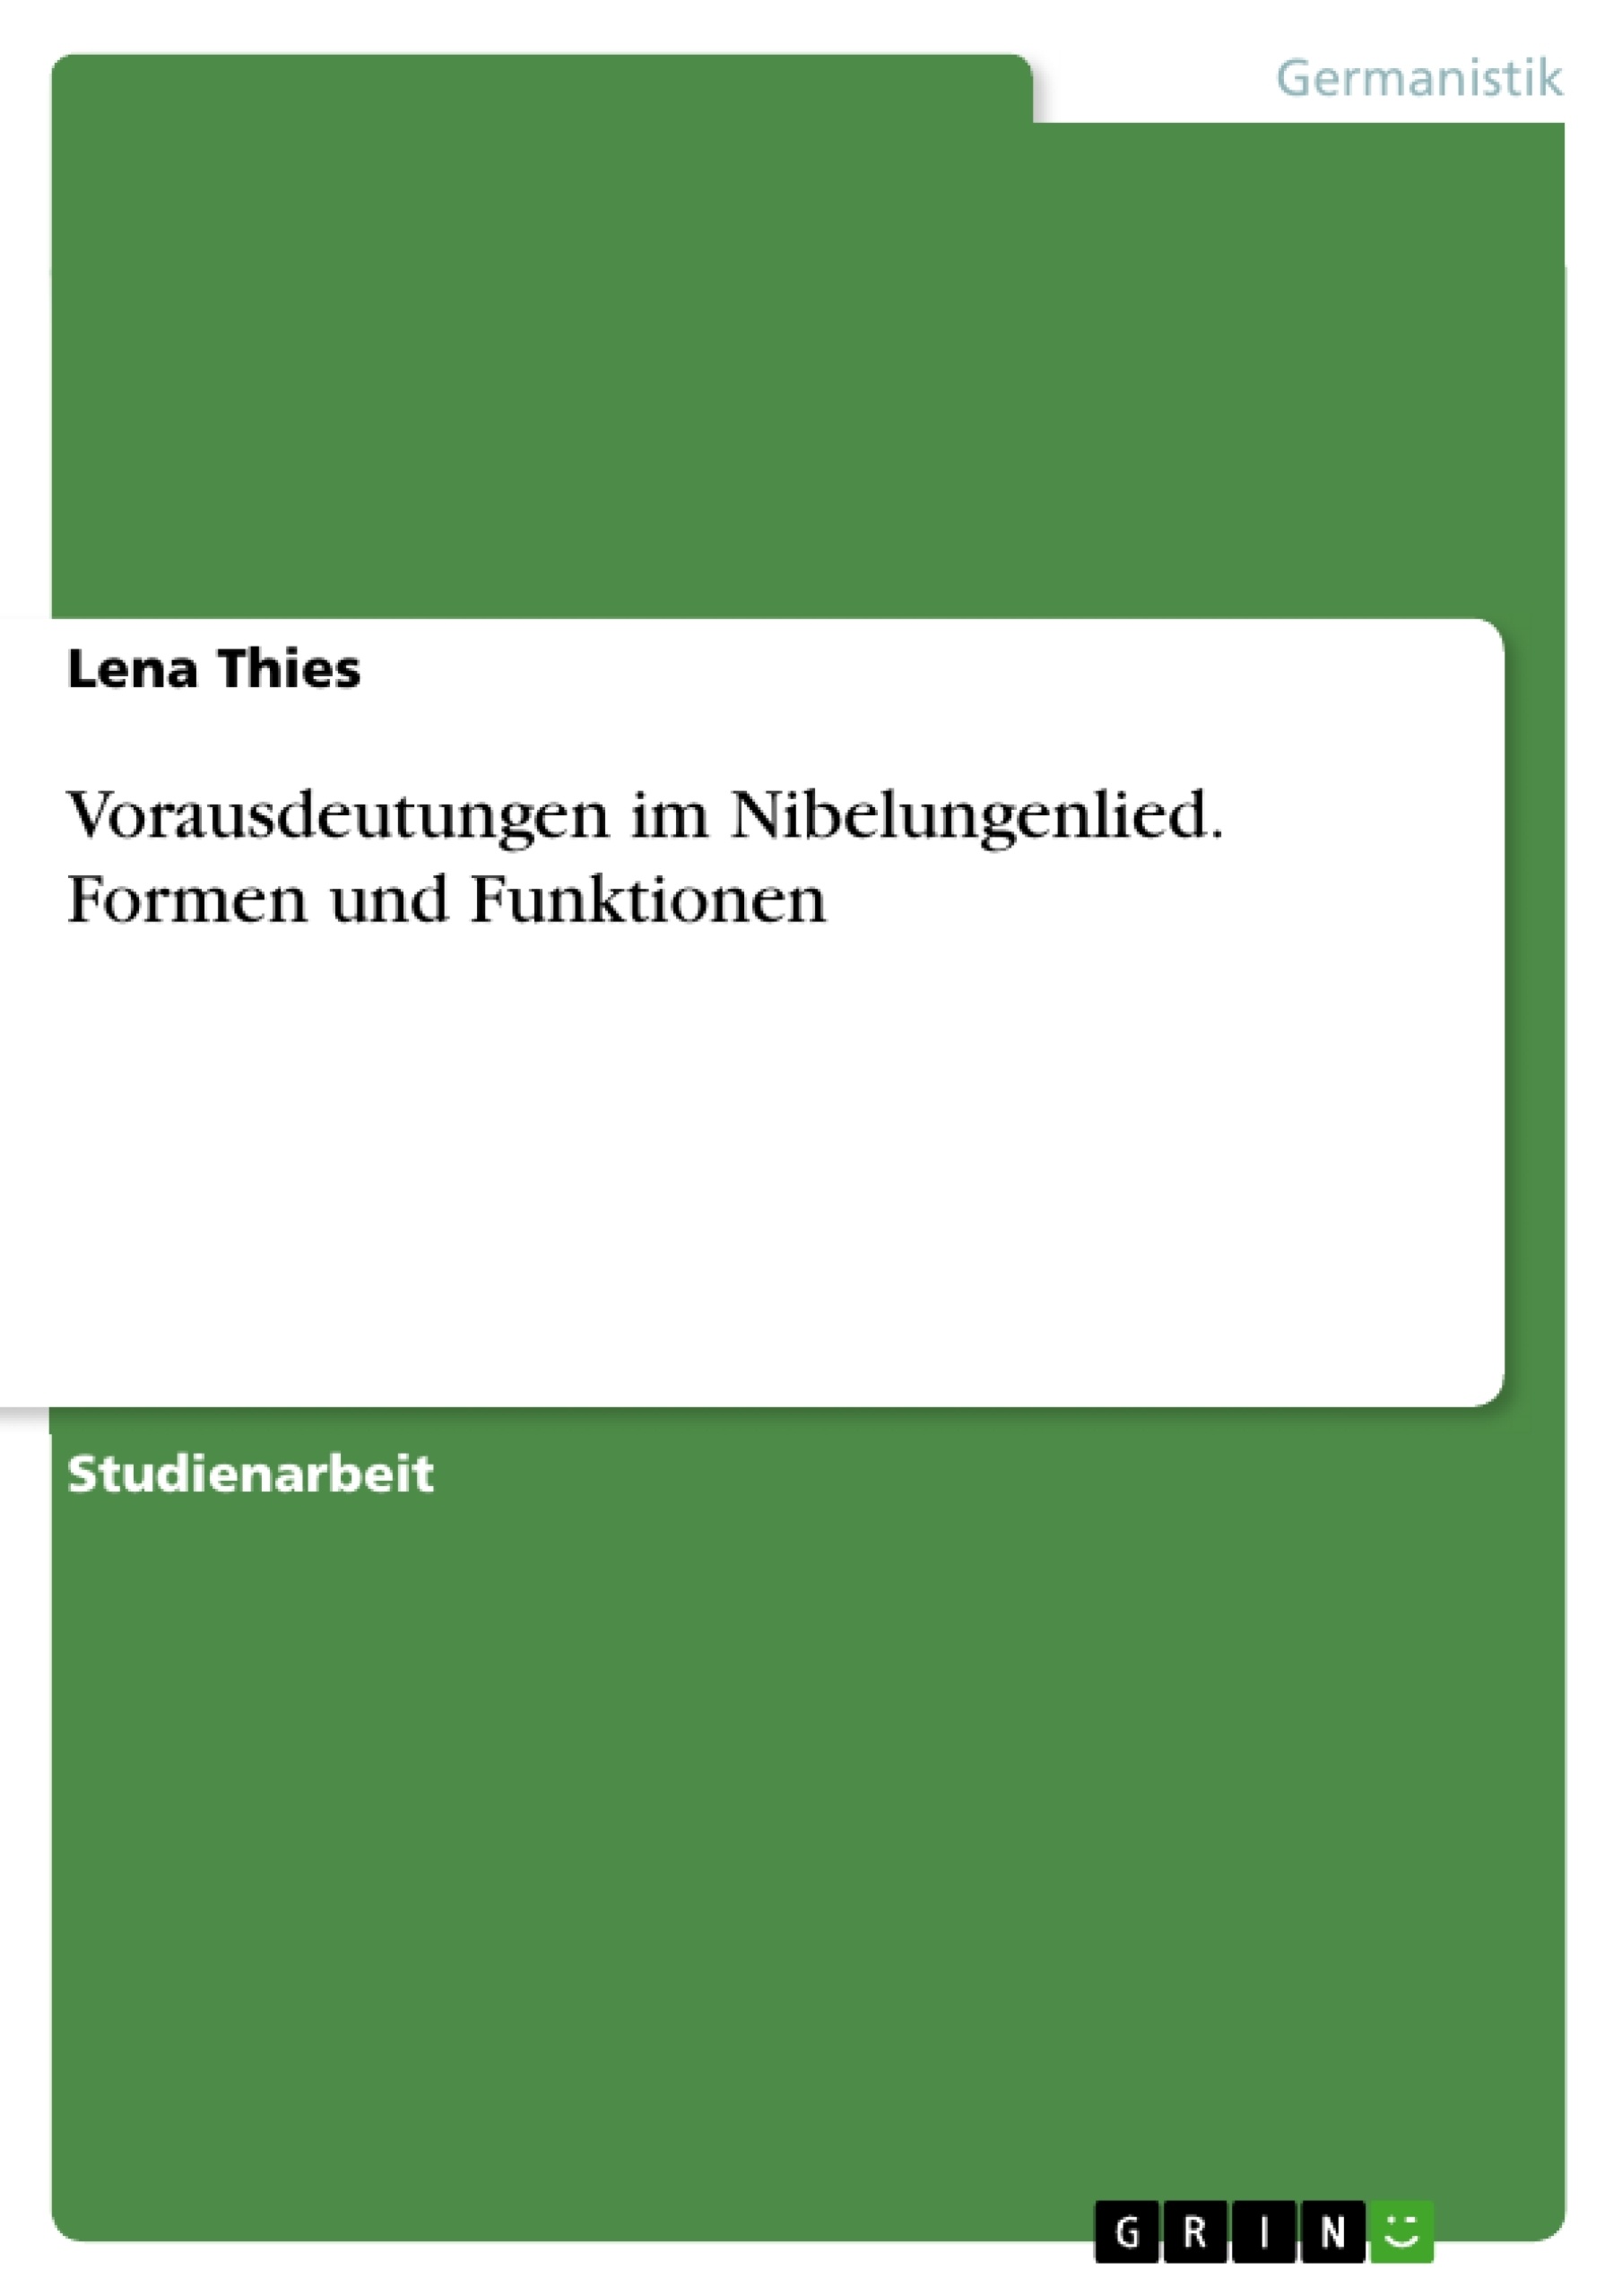 Titre: Vorausdeutungen im Nibelungenlied. Formen und Funktionen